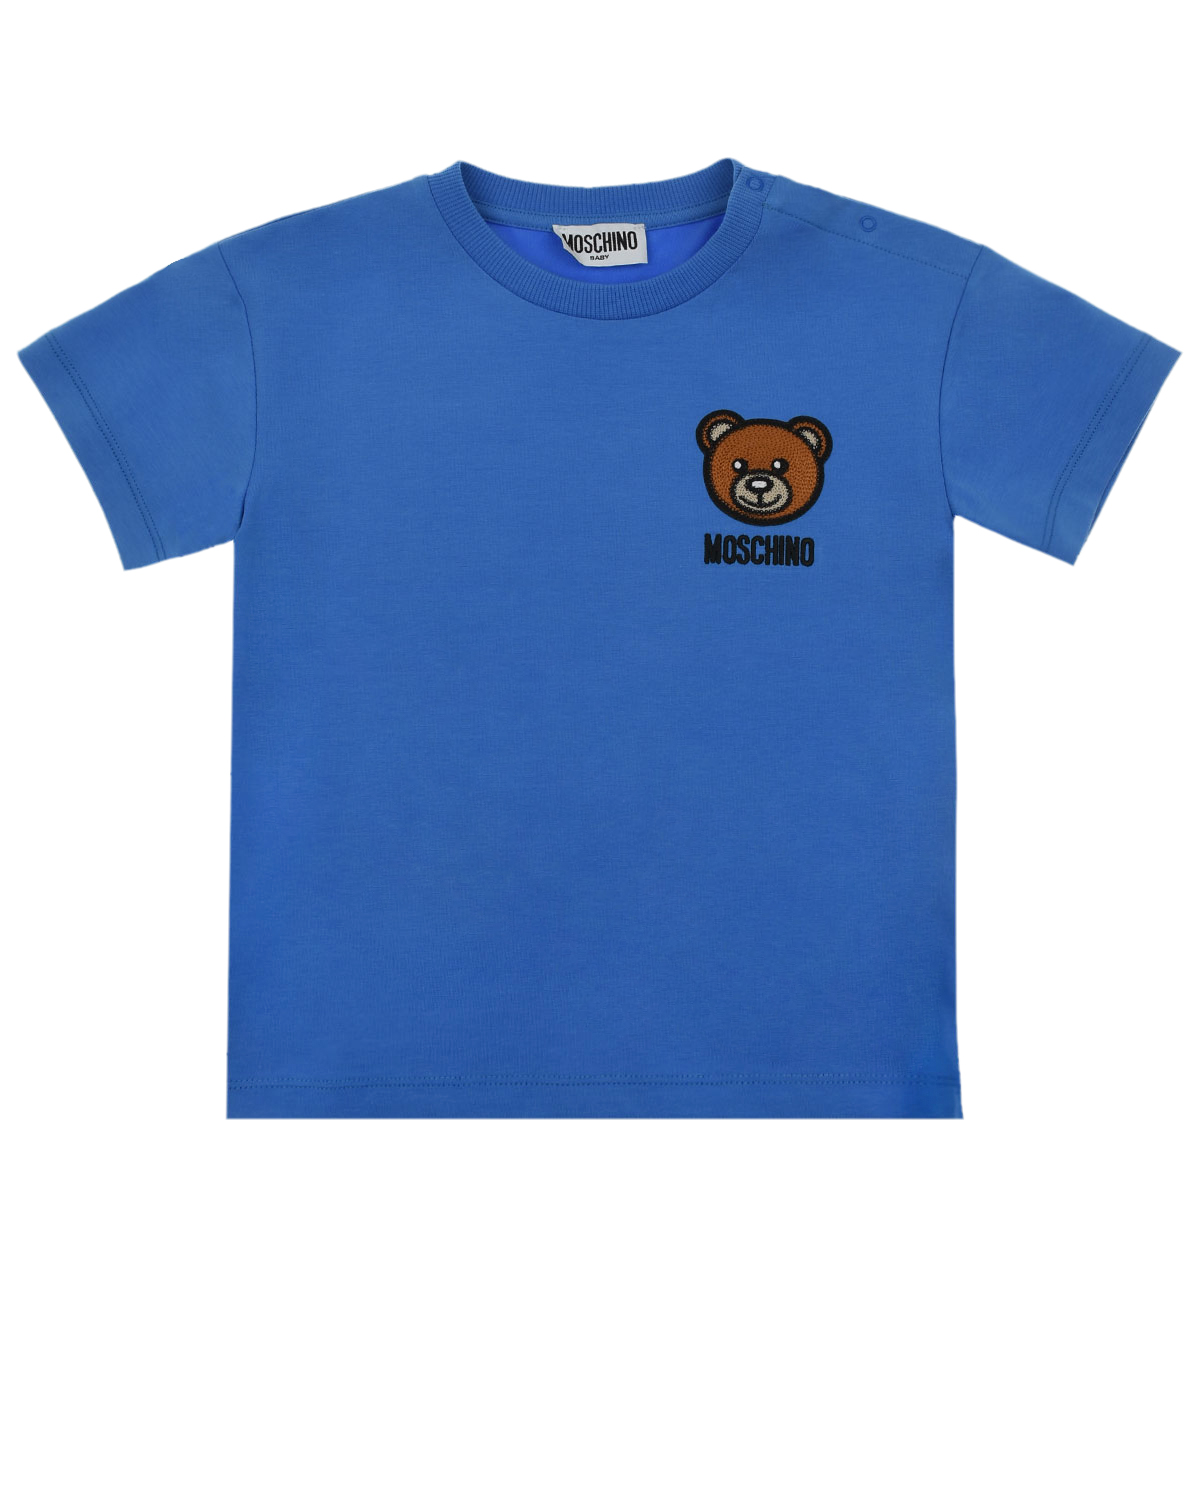 Купить Голубая футболка с патчем медвежонок Moschino детская, Голубой, 95%хлопок+5%эластан, 96%хлопок+4%эластан, 60%акрилик+20%шерсть+20%полиэстер, 100%полиэстер